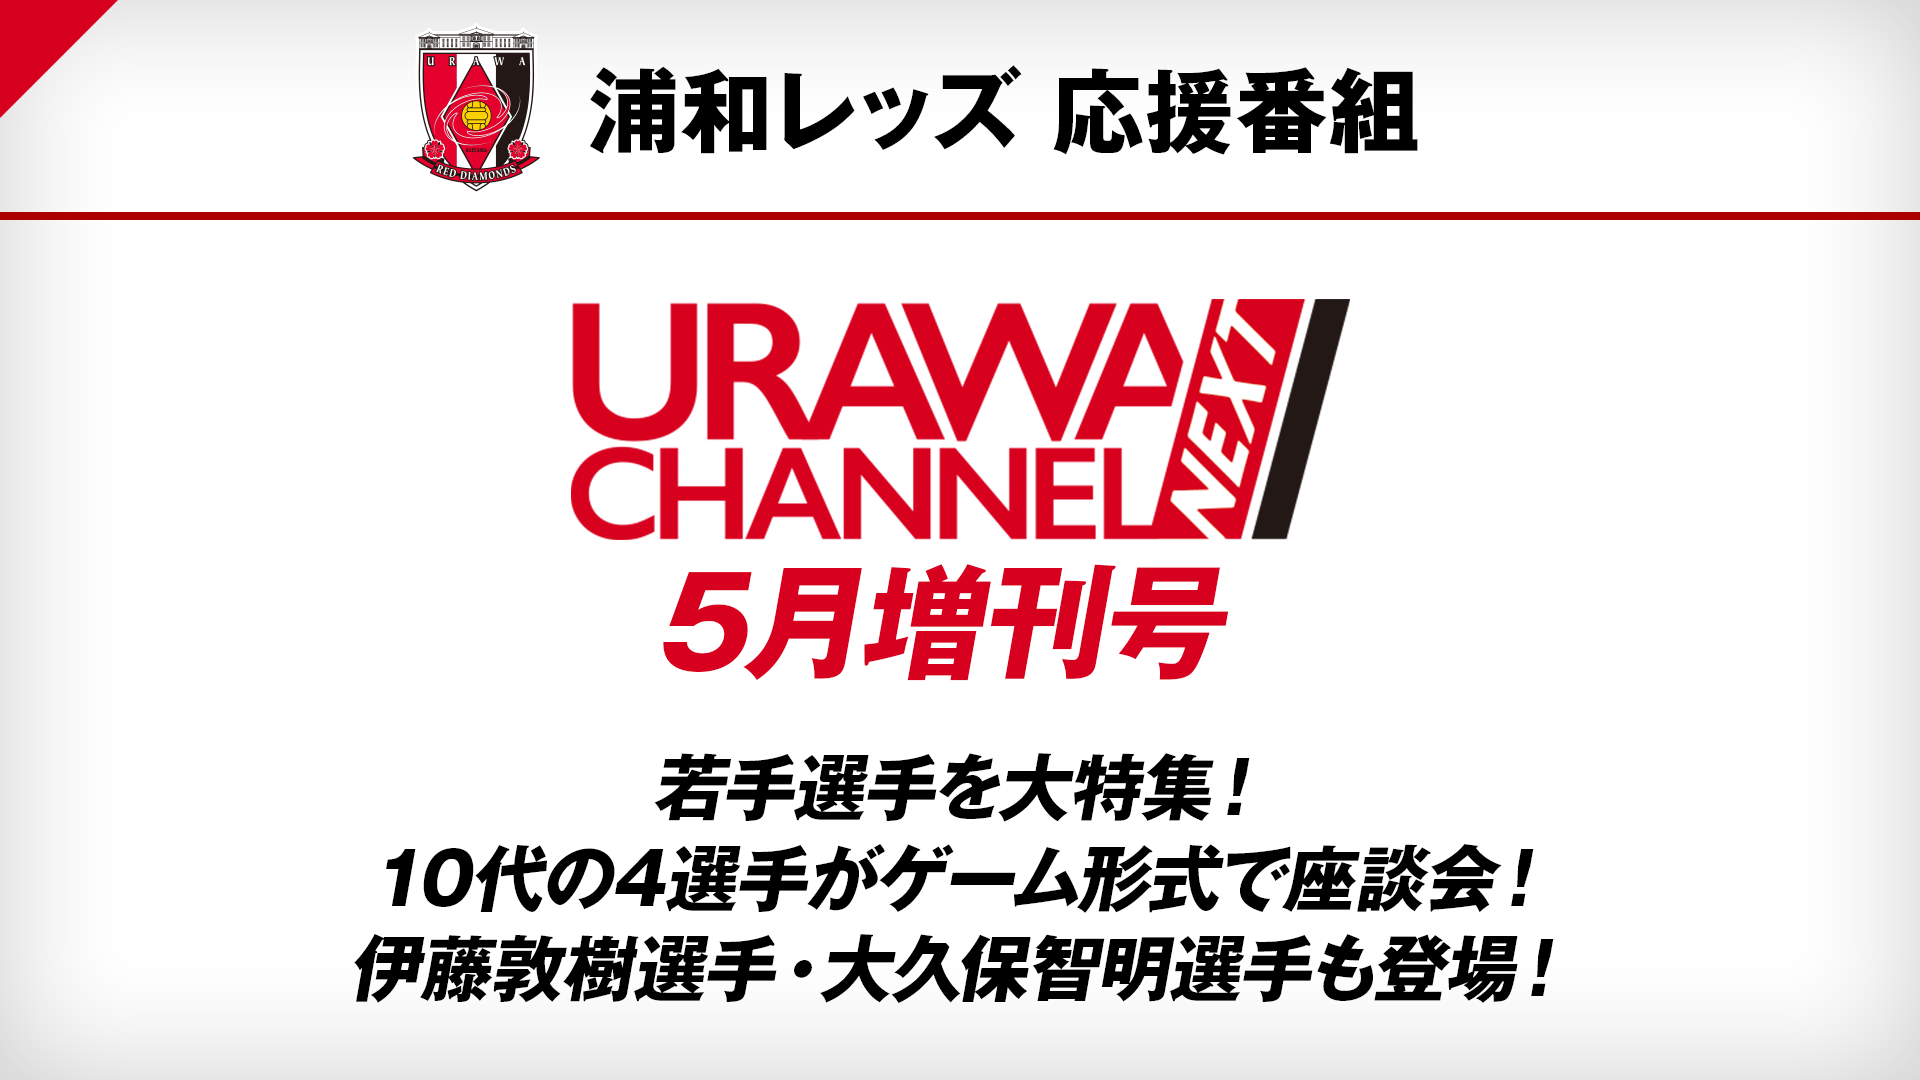 浦和レッズ 応援番組 Urawa Channel Next 番組詳細 オリジナルサッカー番組 スカパー サッカー放送